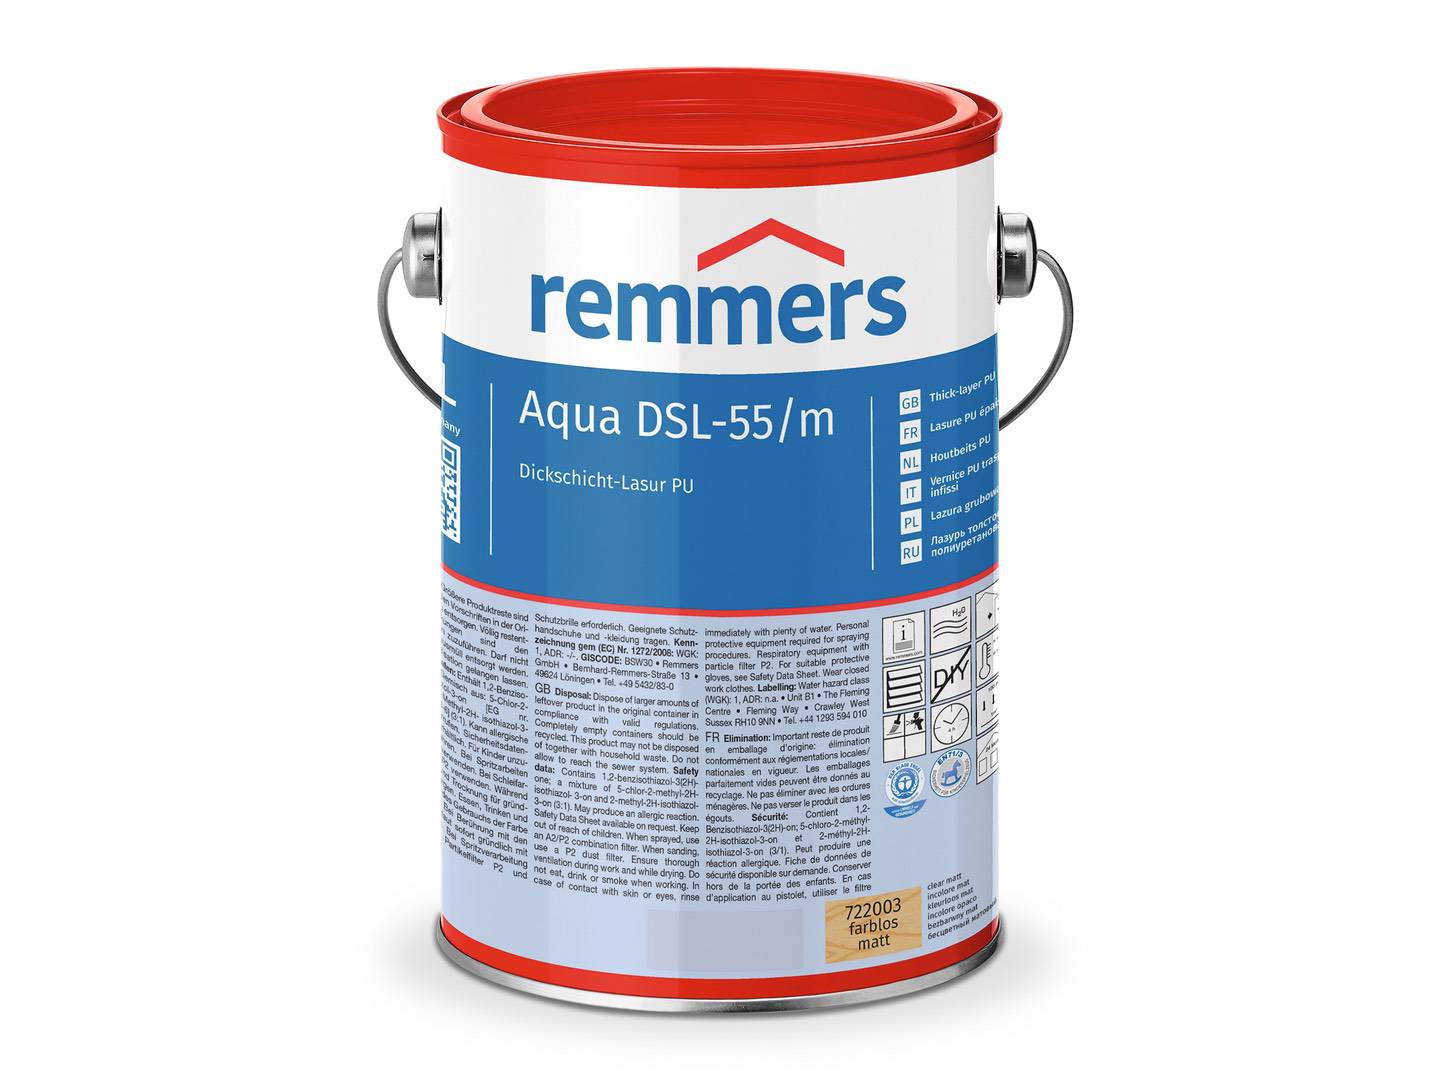 REMMERS Aqua DSL-55-Dickschicht-Lasur PU teak (RC-545) seidenglänzend 0,75 l